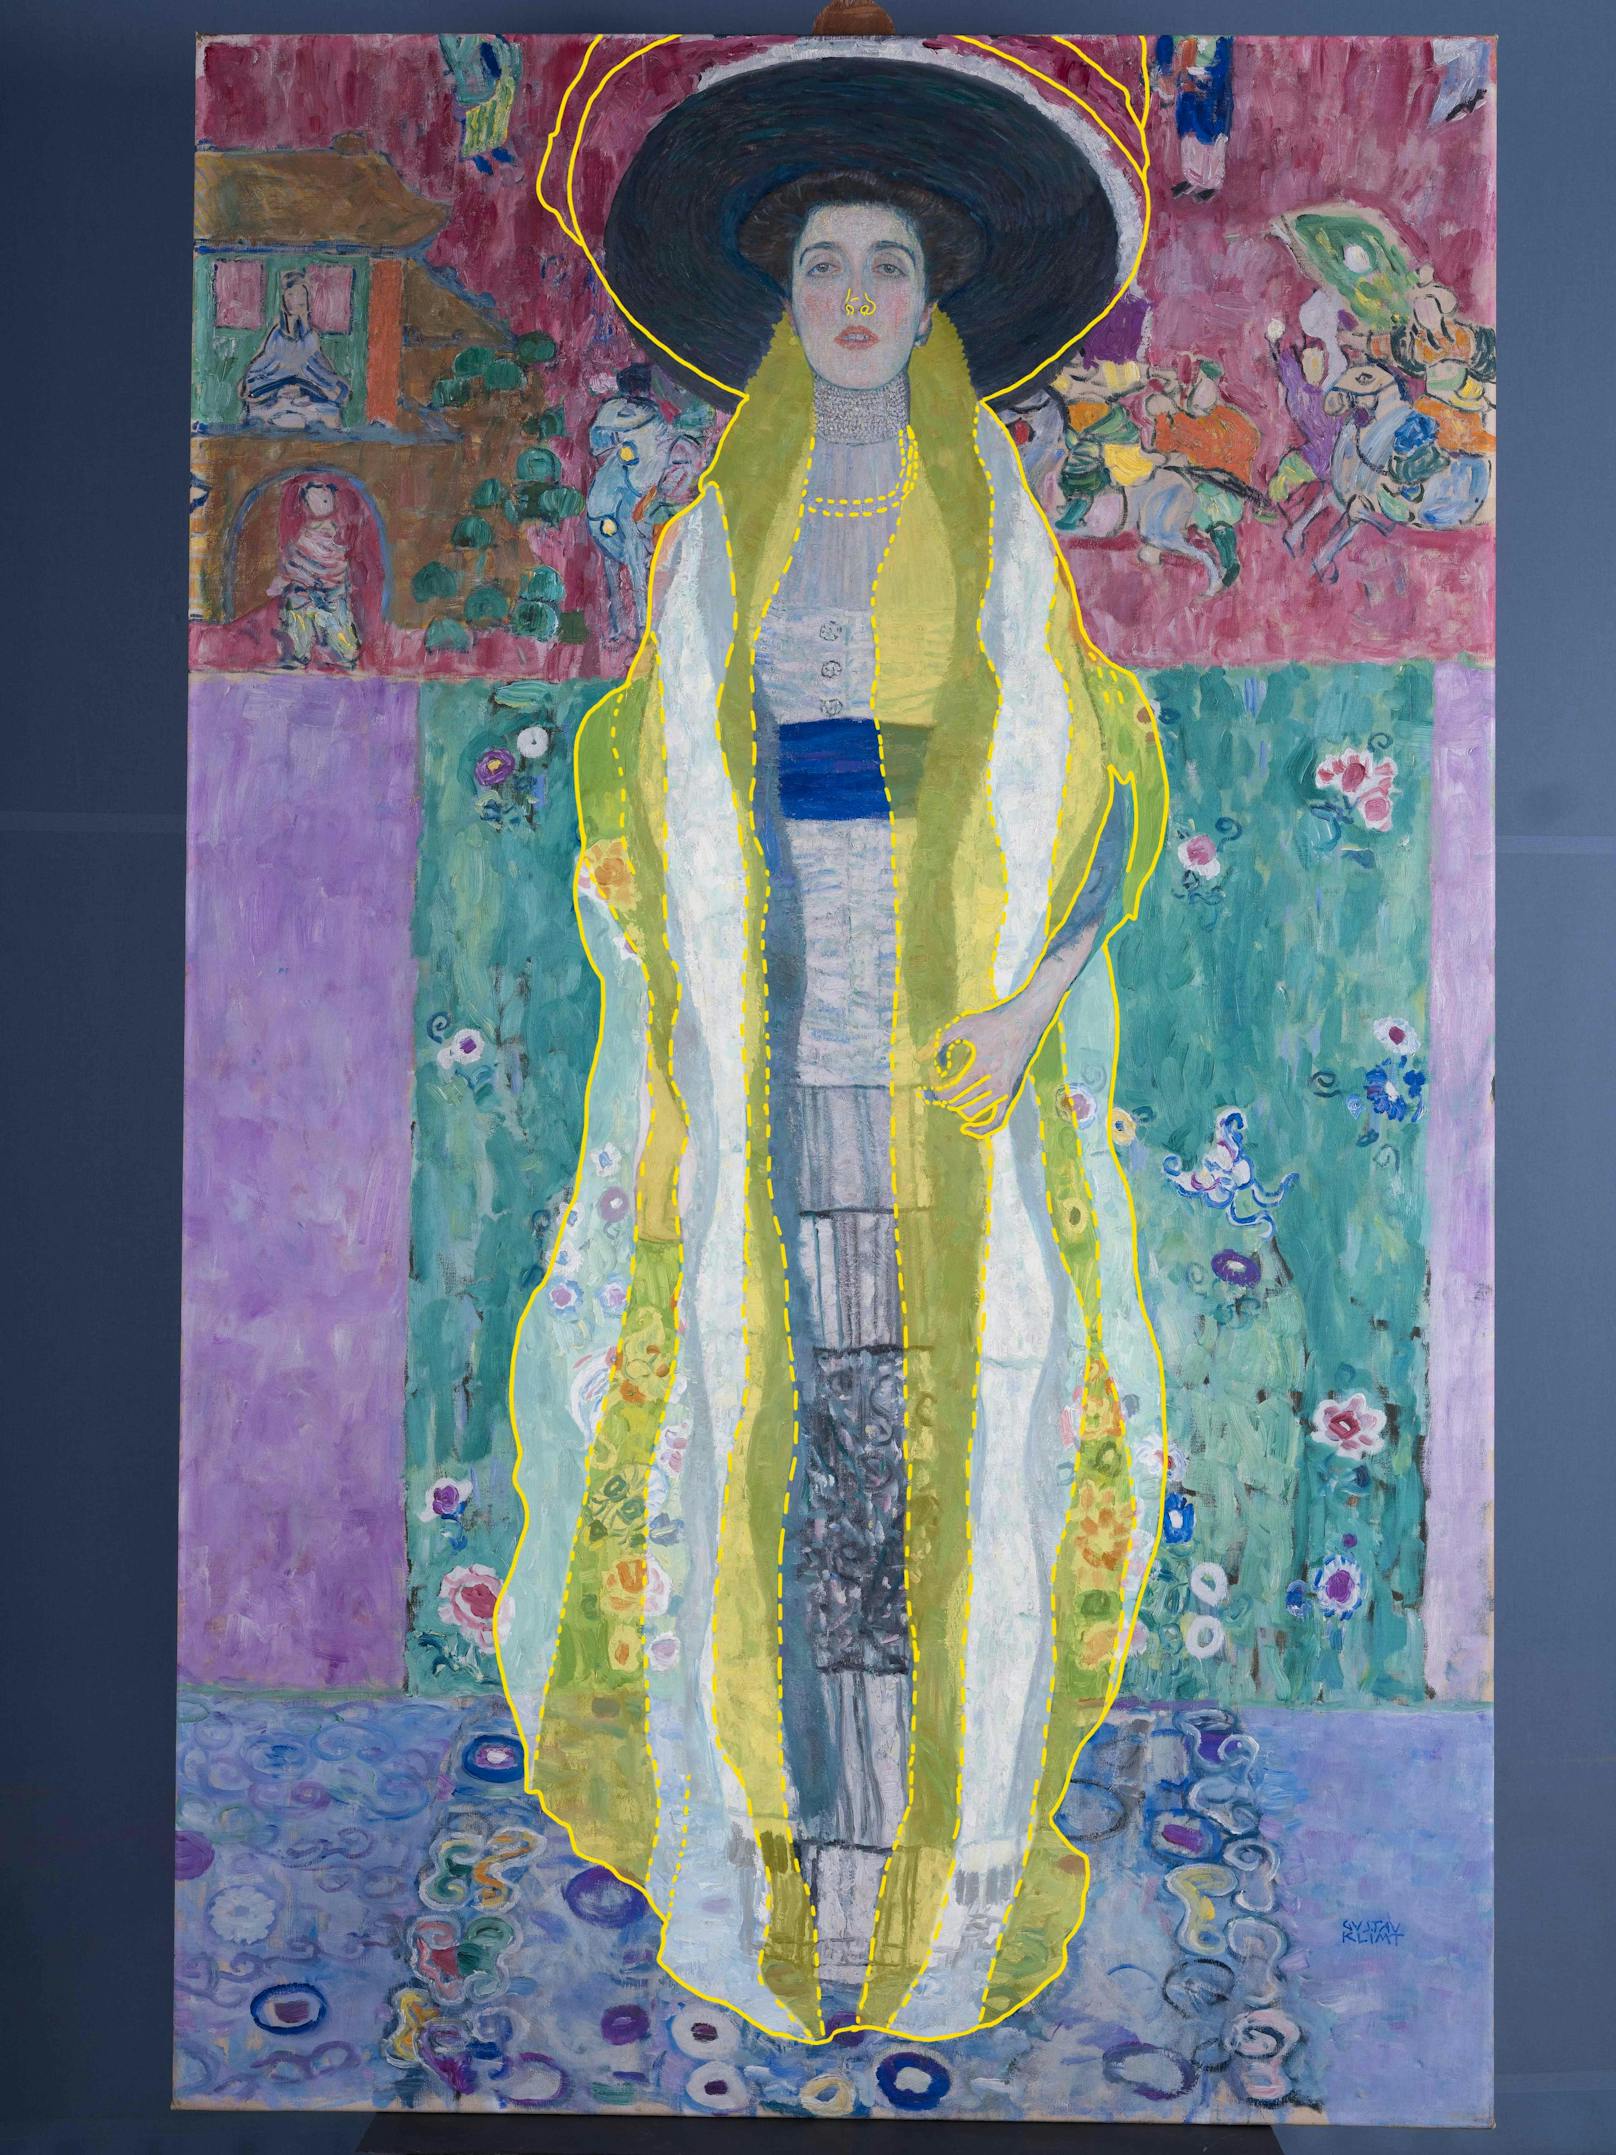 Diese Rekonstuktion zeigt, wie Gustav Klimt das Werk zunächst geplant hatte.